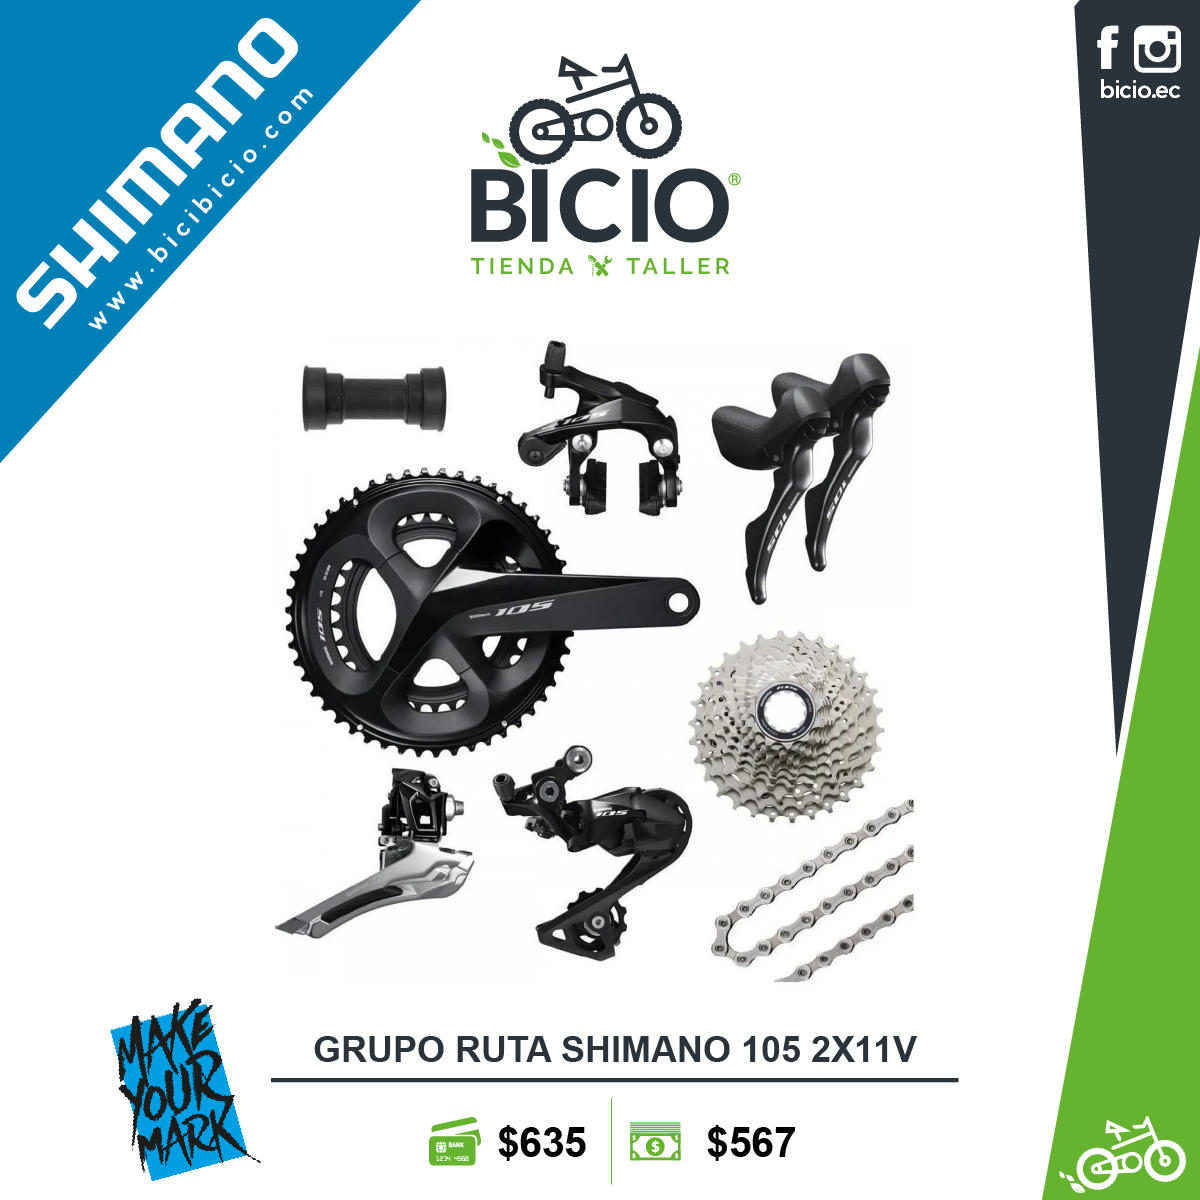 Pedal Shimano 105 PD-R7000 - Bicio tienda - taller de bicicletas